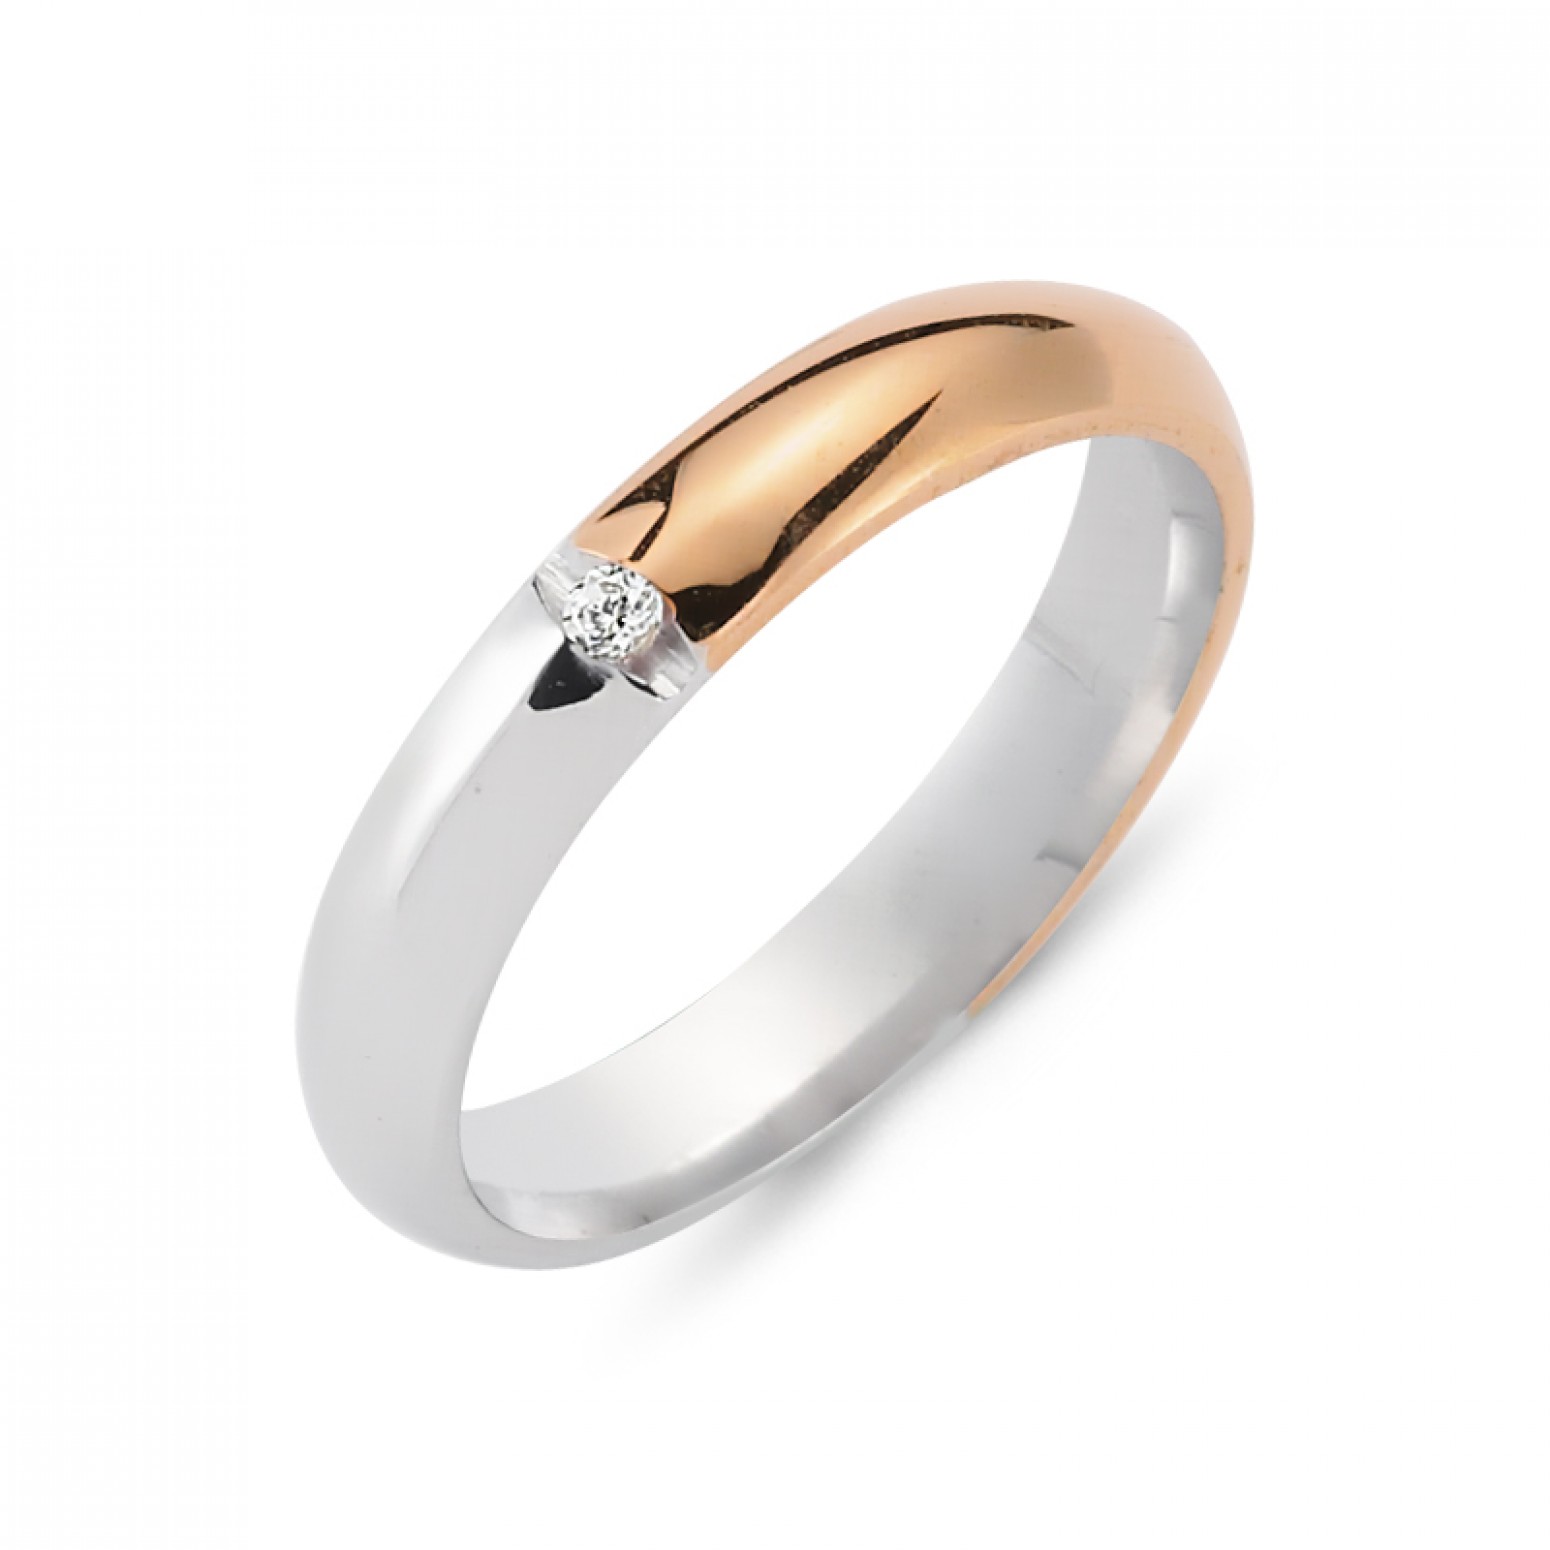 Chrilia wedding rings in white & pink gold, K14, pair  da2799 WEDDING RINGS Κοσμηματα - chrilia.gr